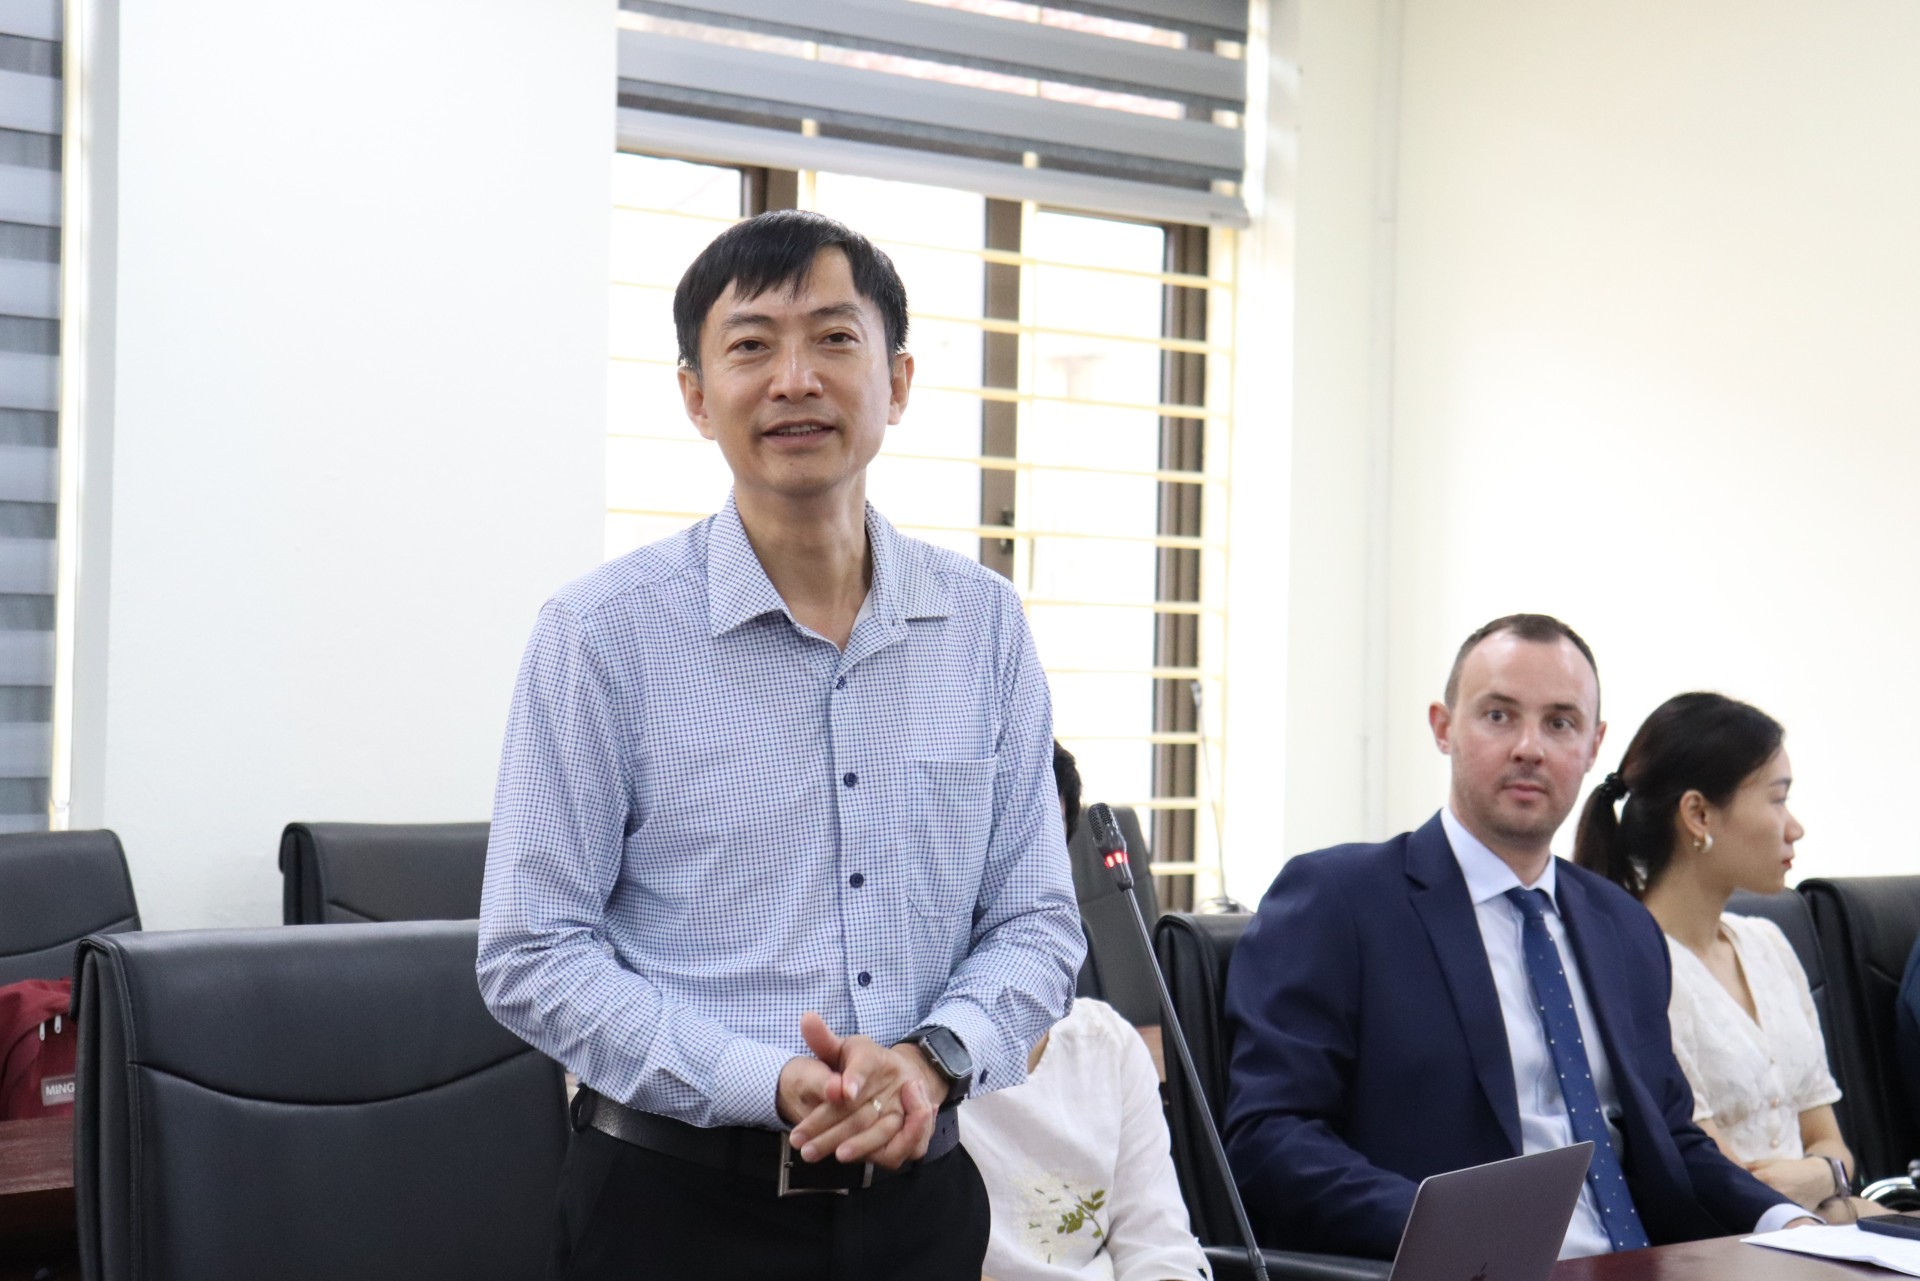 Ông Nguyễn Hồng Long - Giám đốc Trung tâm Nghiên cứu, Tư vấn sáng tạo và Phát triển bền vững (CCS) chia sẻ một số thông tin về Hội thảo Quốc tế Khởi nghiệp tạo tác động và cuộc thi Climate Launchpad.